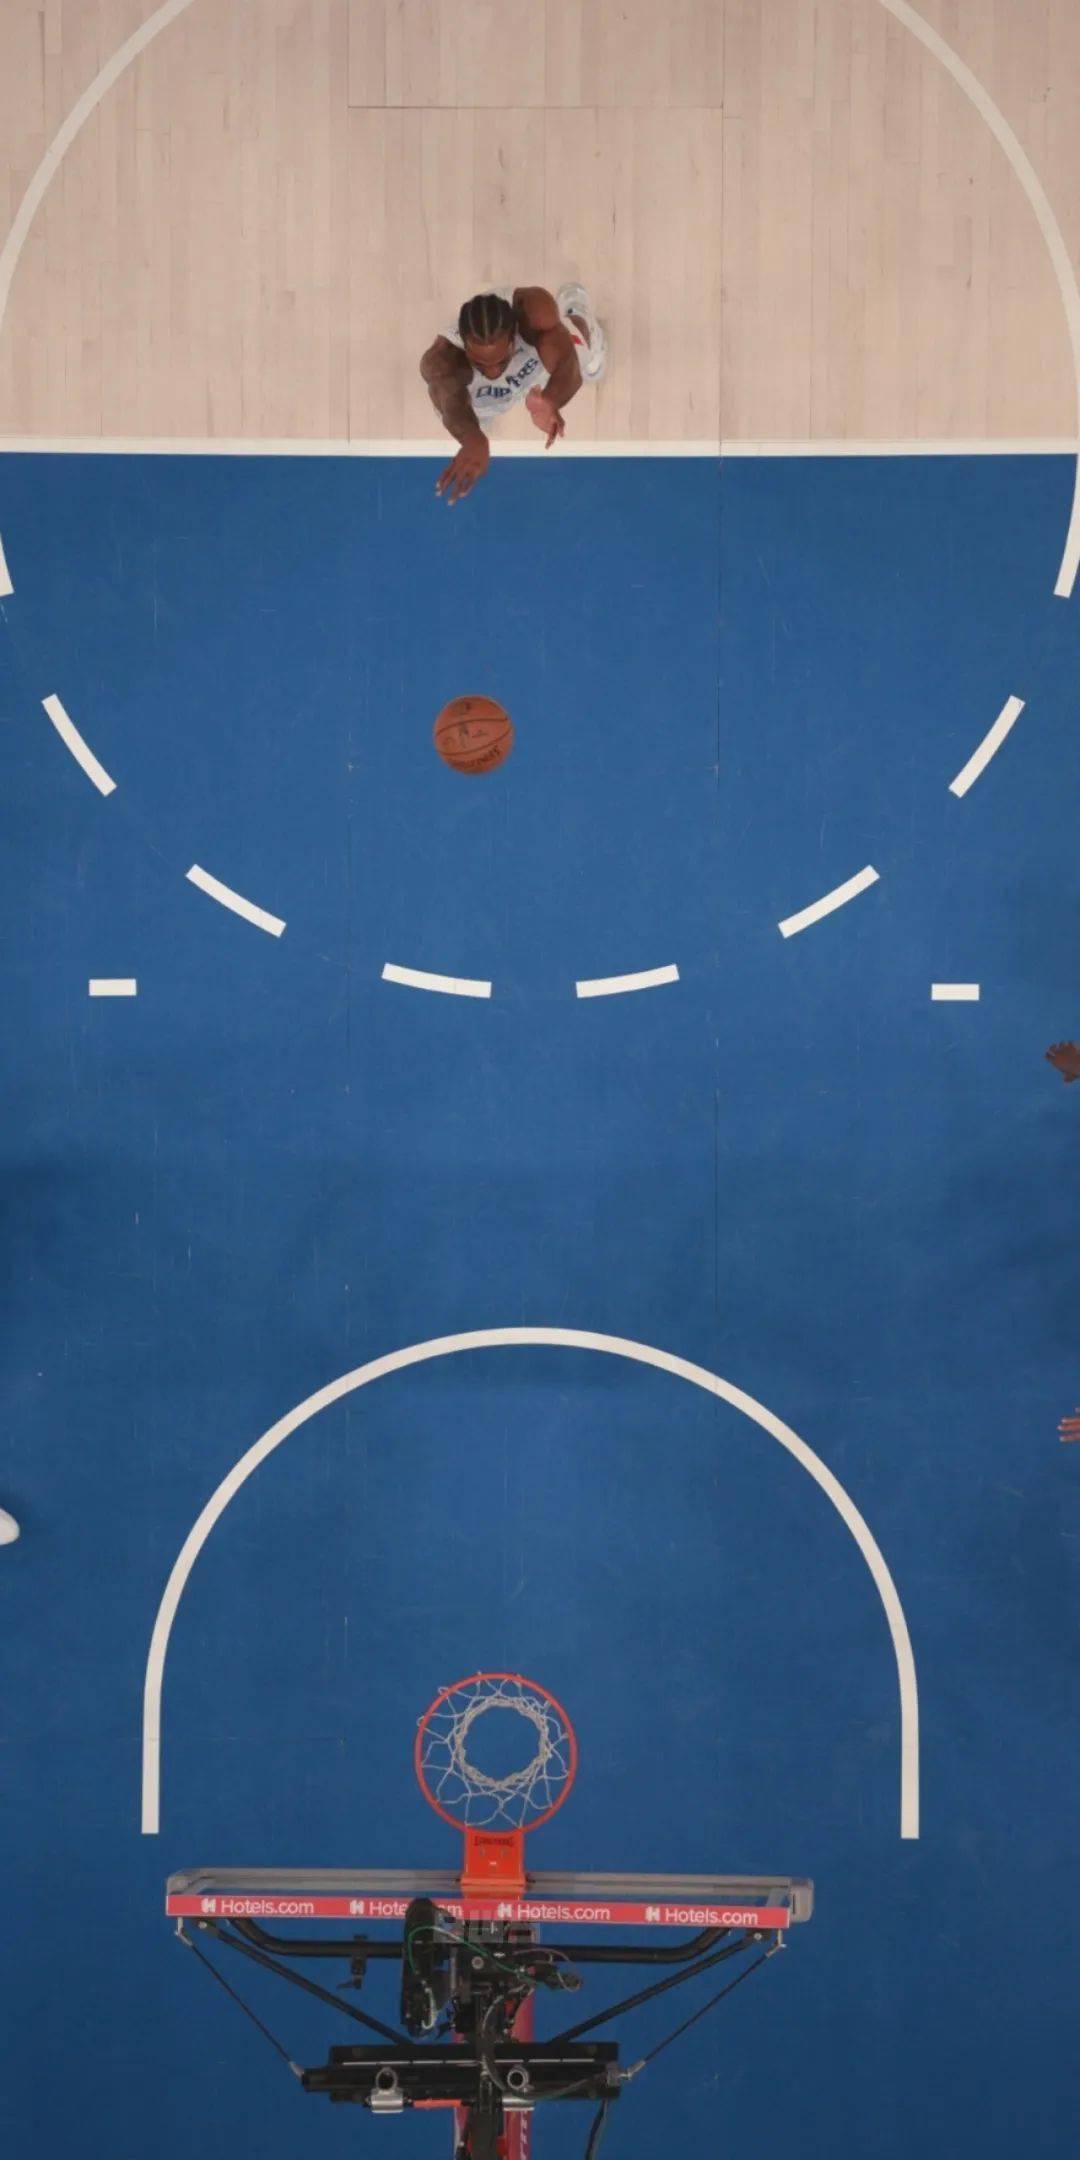 篮球背景图 微信图片